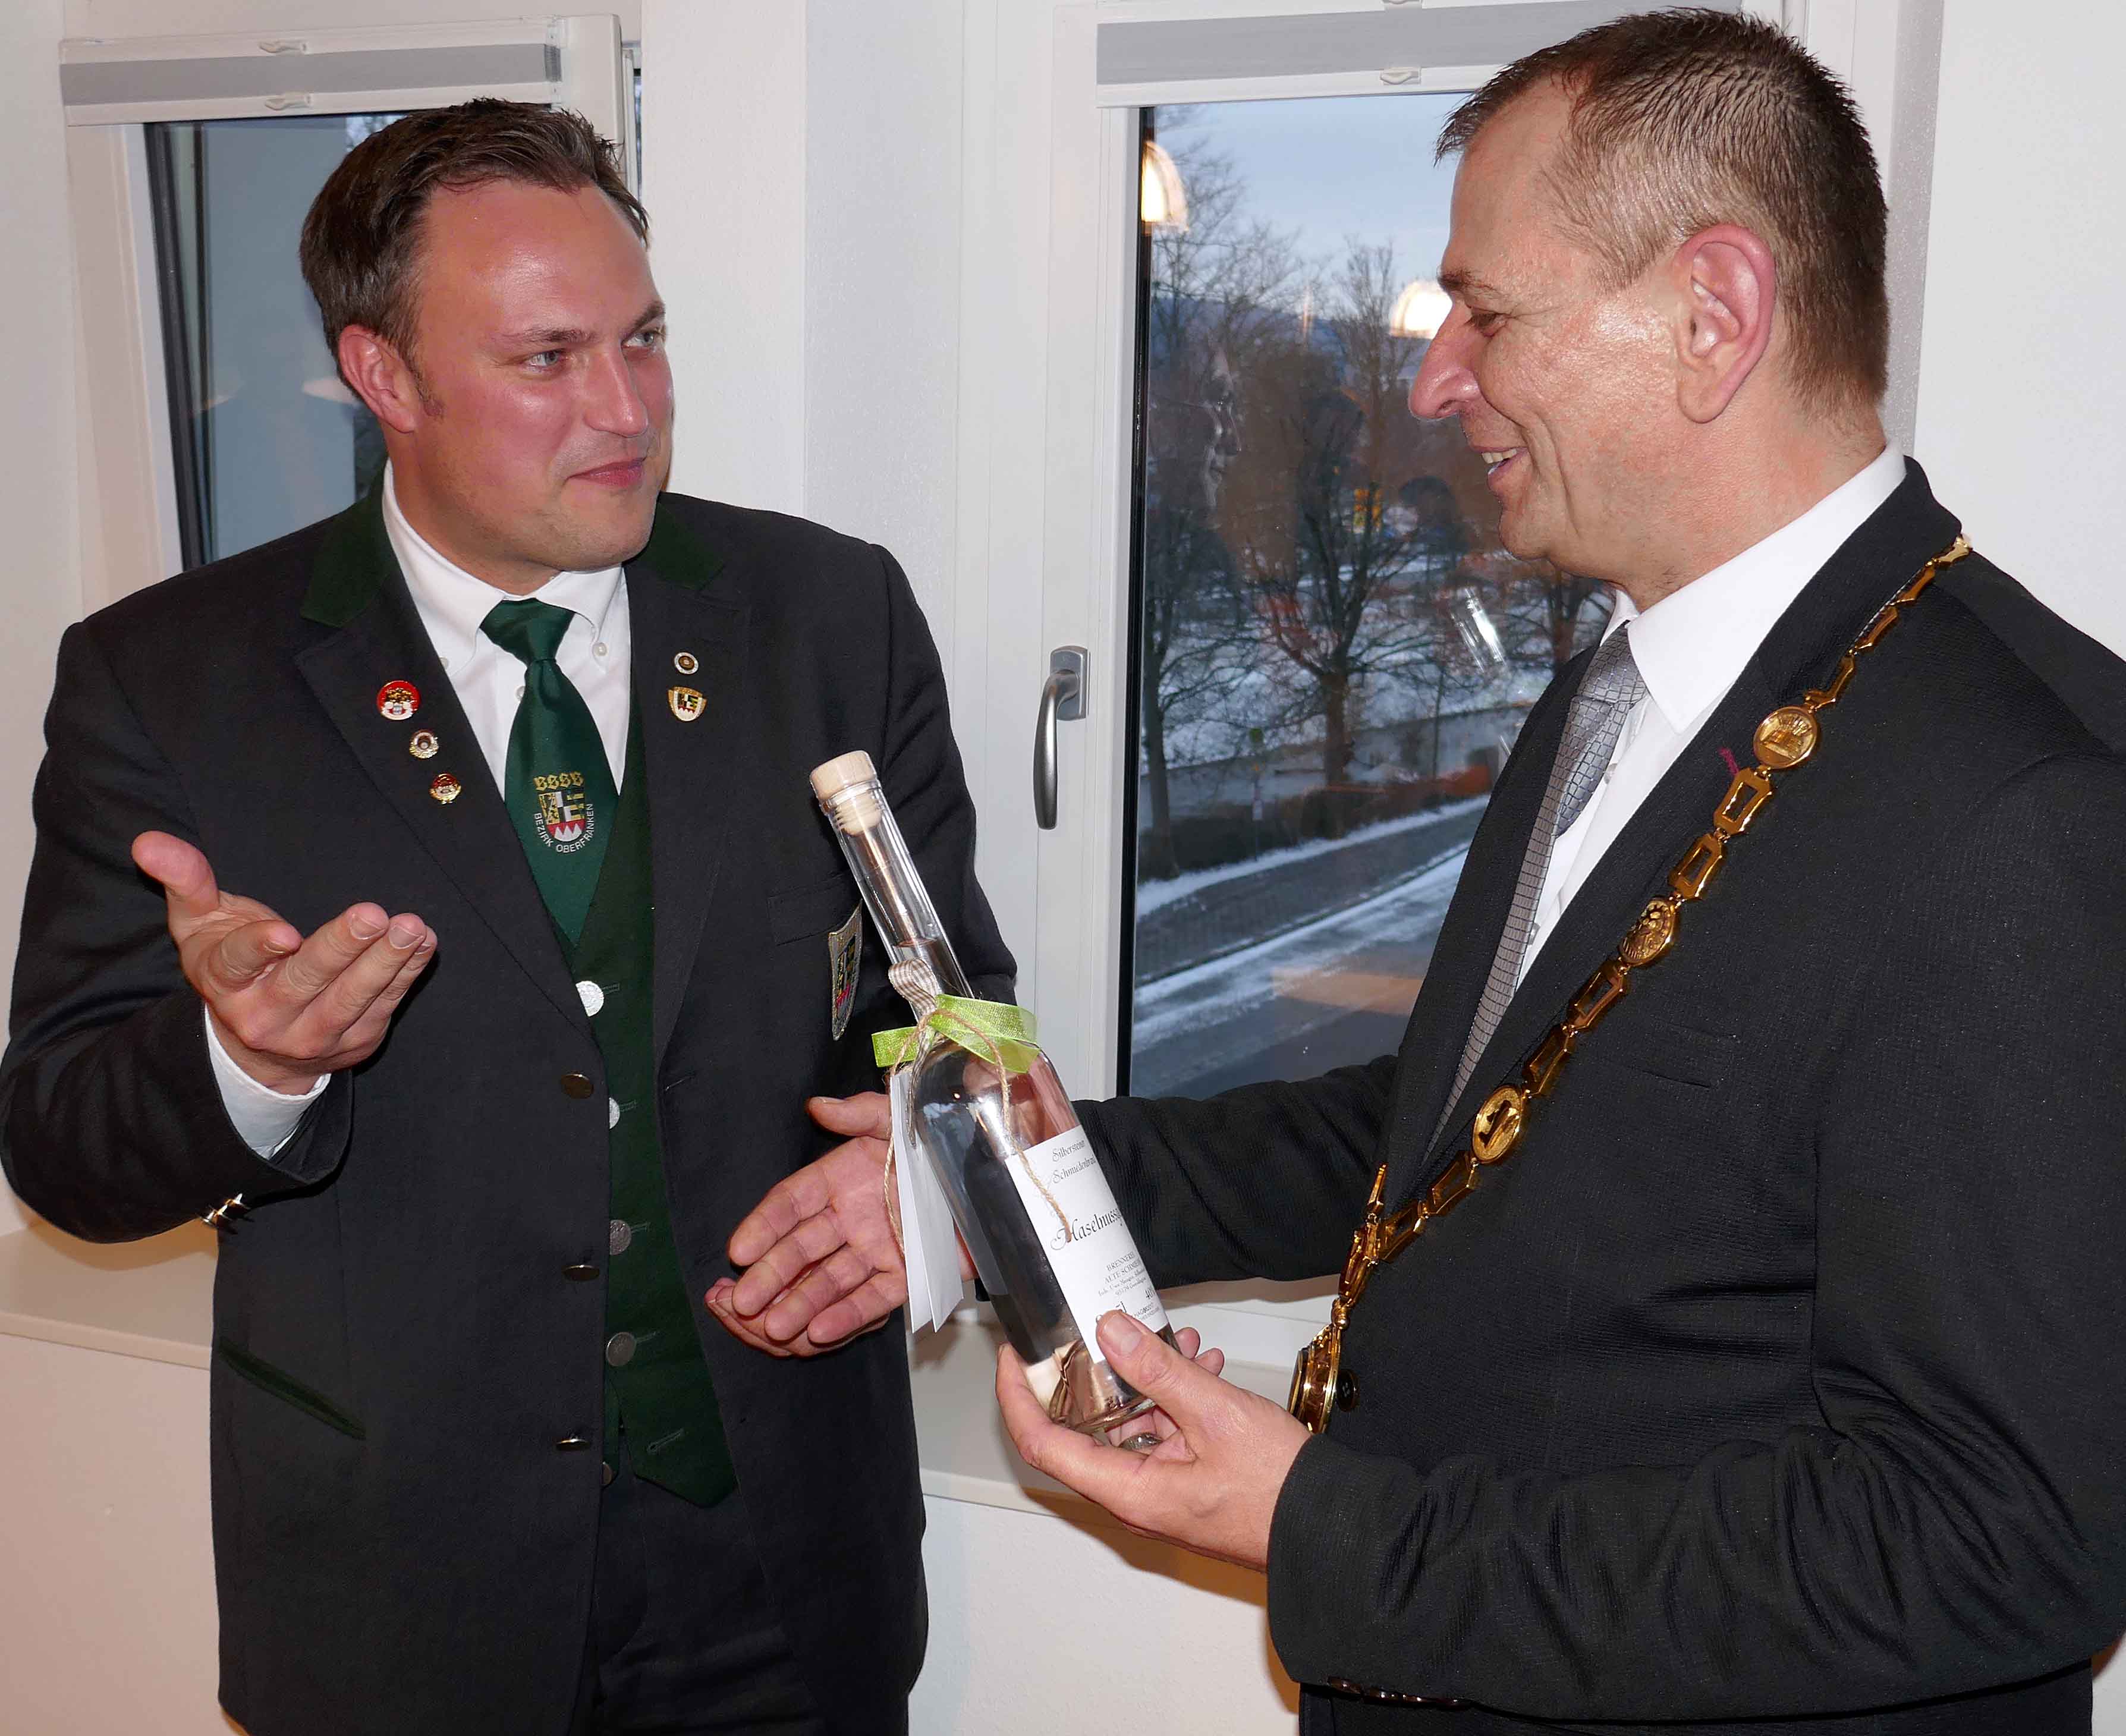 Bezirksschützenmeister Alexander Hummel (links) überreicht dem Bürgermeister der Stadt Naila, Franz Stumpf ein Gastgeschenk. In der Stadt im Frankenwald findet der oberfränkische Bezirksschützentag 2018 statt.